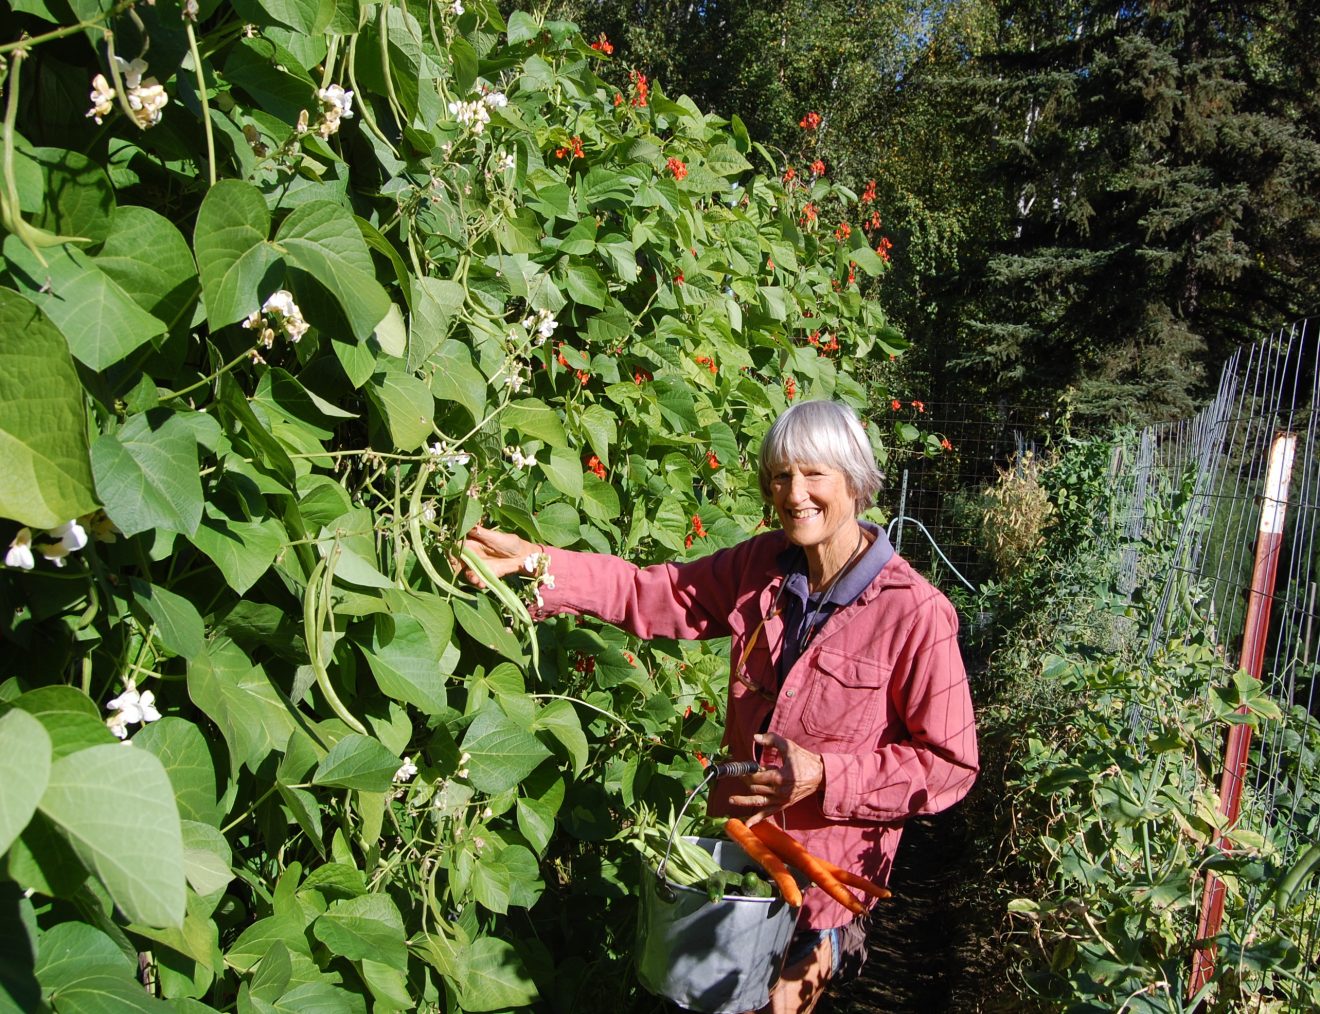 Photo illustrates Terry Reichardt picking beans